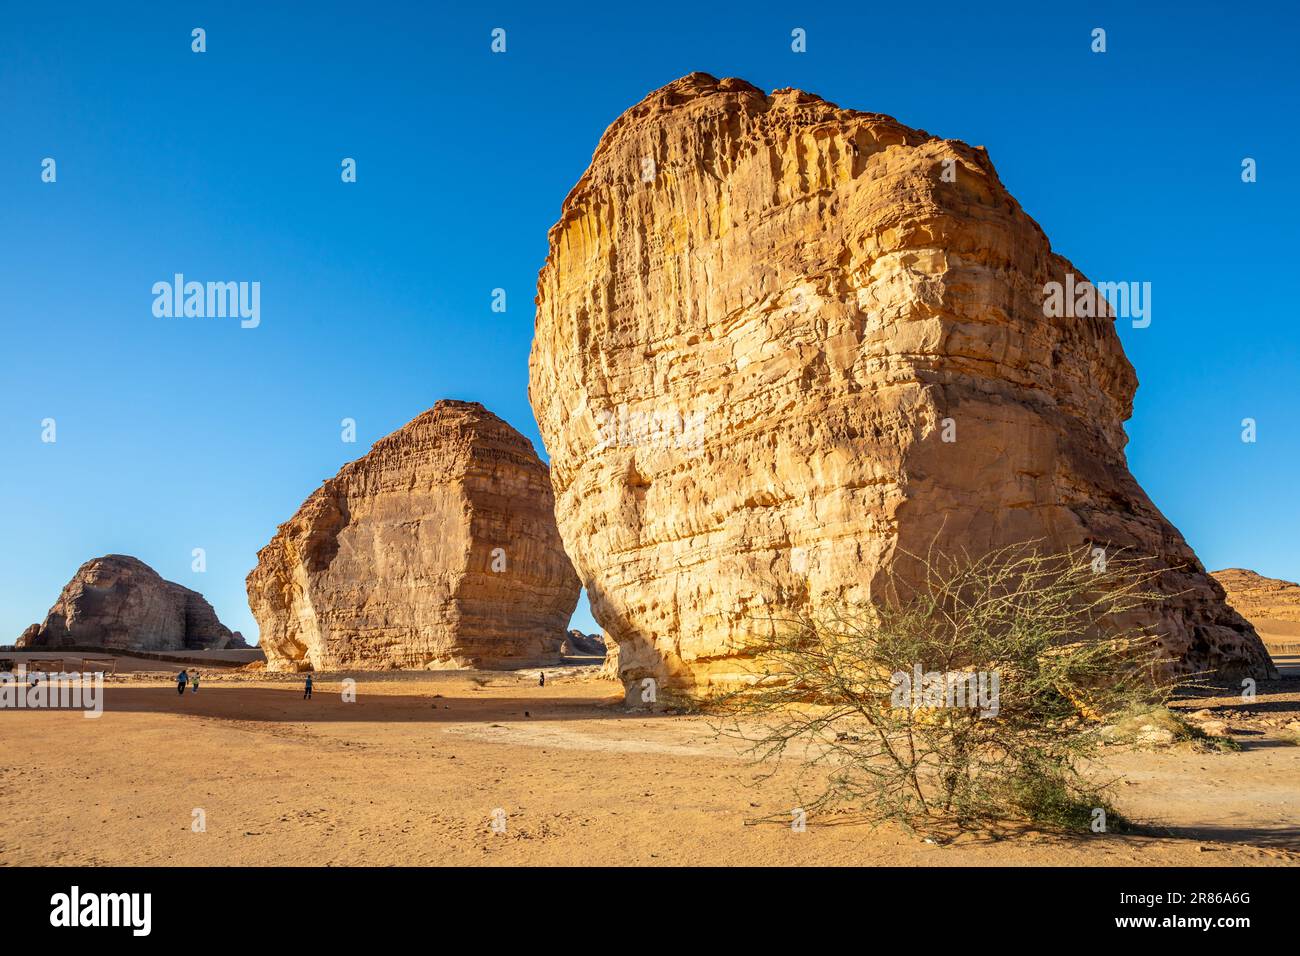 Monolito de erosión de roca de elefante de arenisca en el desierto, Al Ula, Arabia Saudita Foto de stock